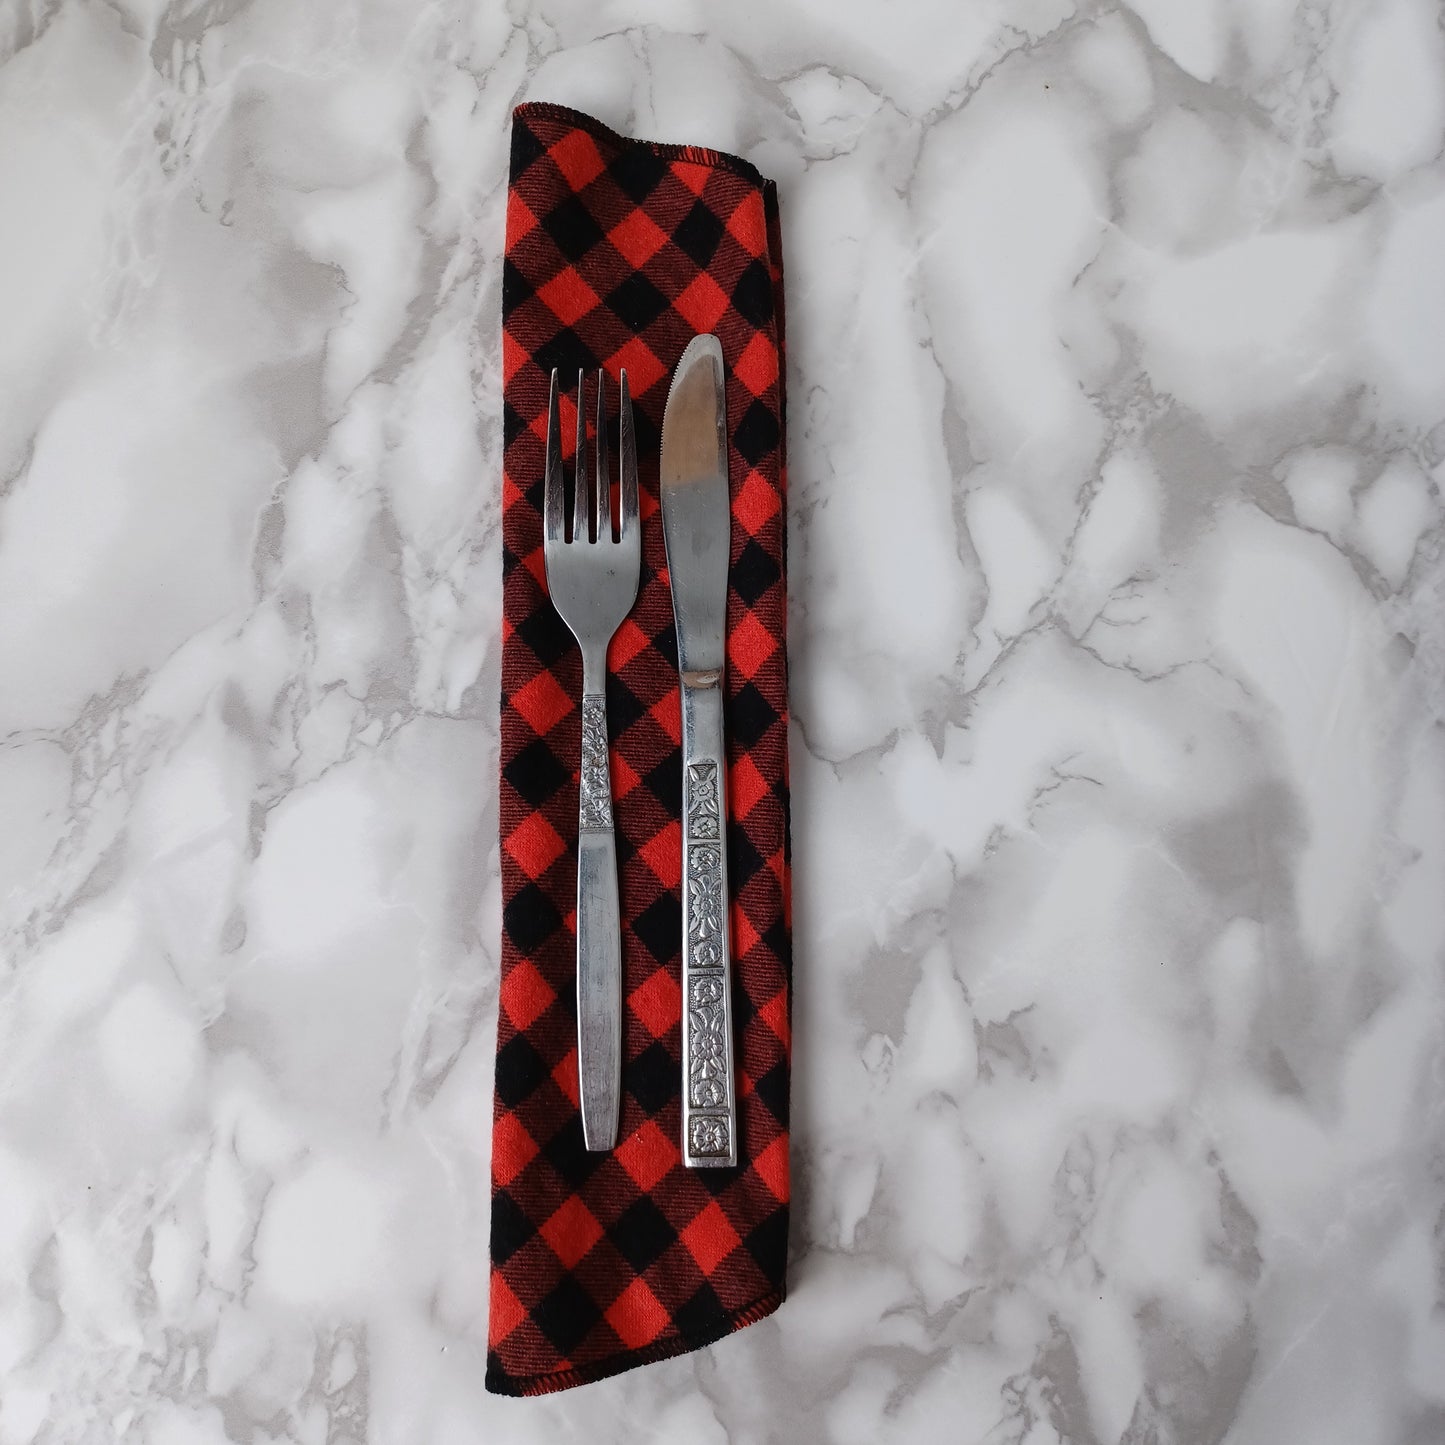 Serviettes de table et Essuie-tout-Petits carreaux noirs et rouges/Napkins and Paperless towels-Small black and red checks